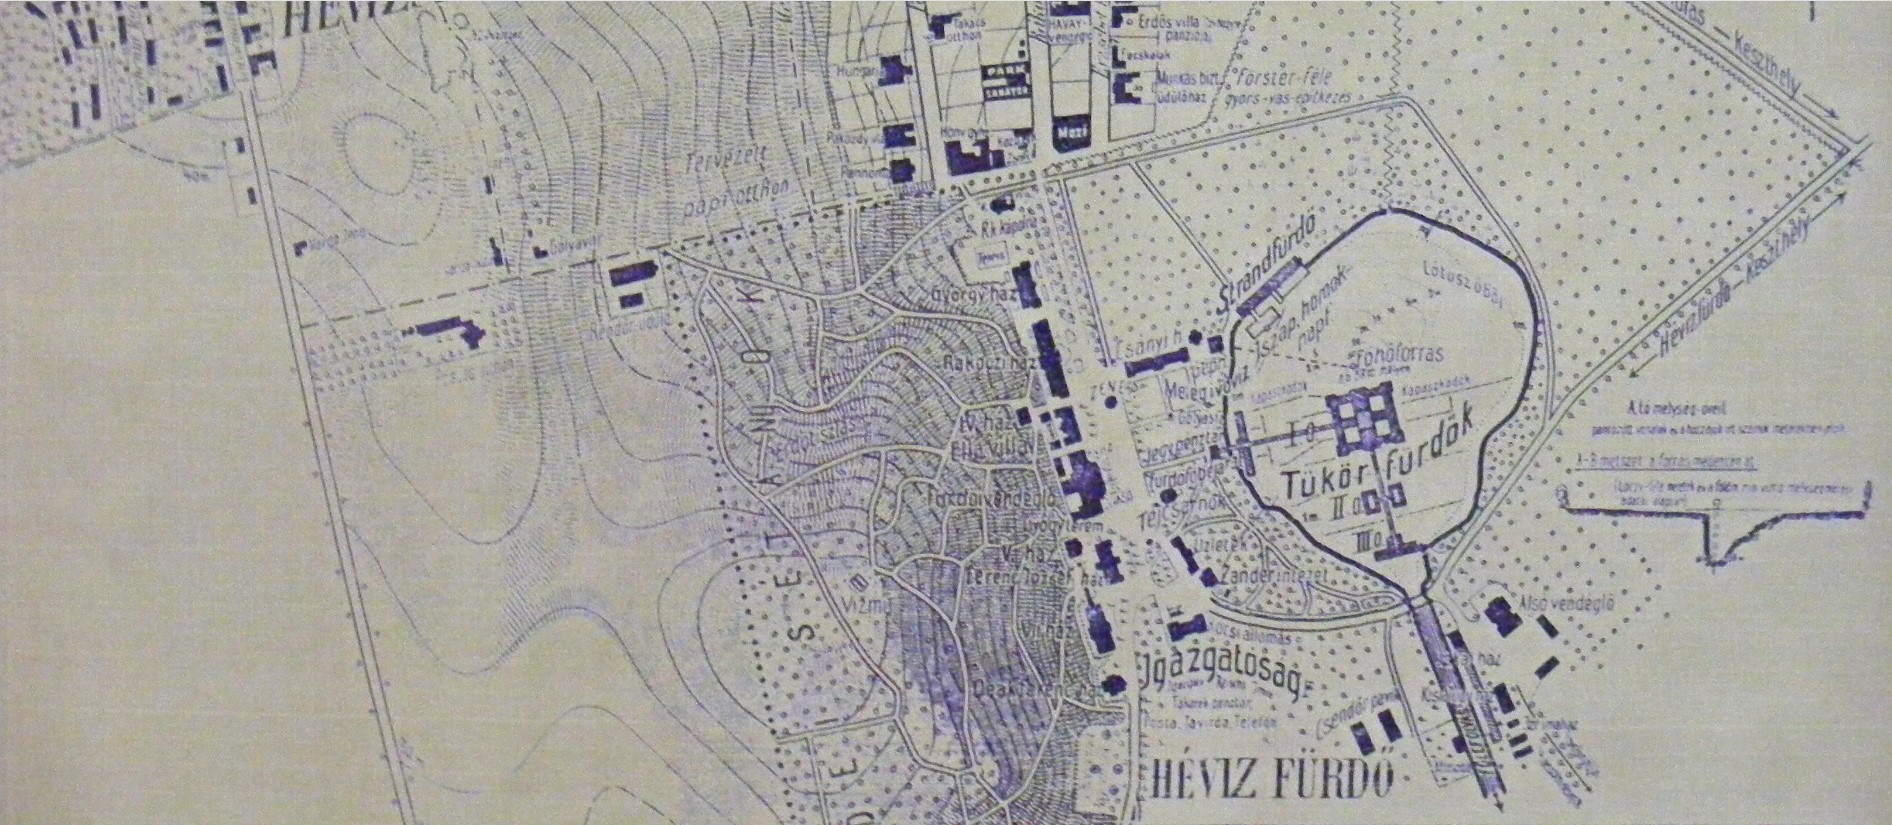 Hévízfürdő térképe 1925